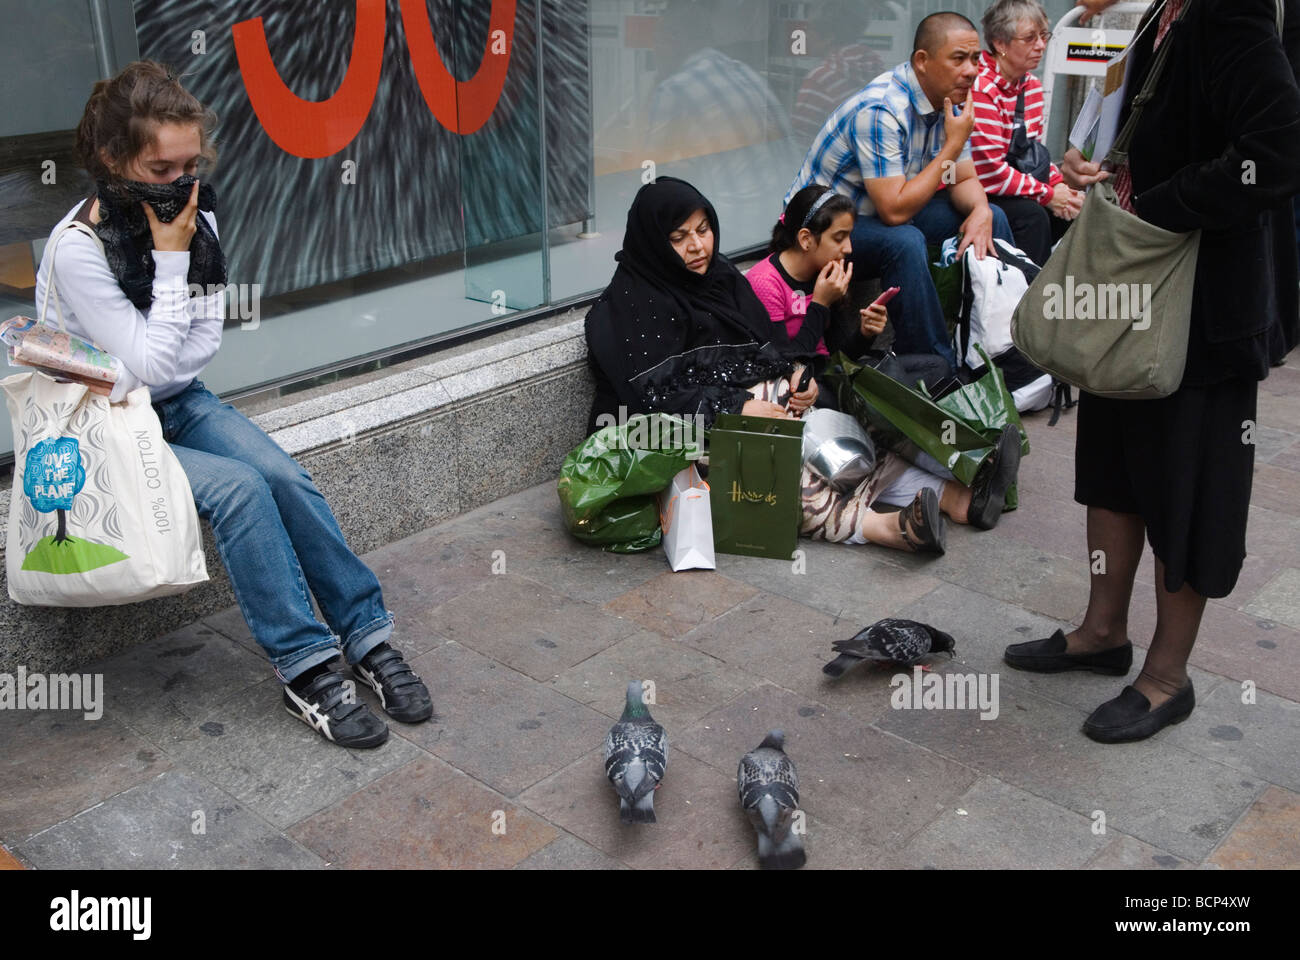 Gruppo turistico musulmano a Knightsbridge Londra fuori dai grandi magazzini Harrods Indossando abiti stile occidentale donna anziana che indossa Abaya 2009 OMERO SYKES Foto Stock